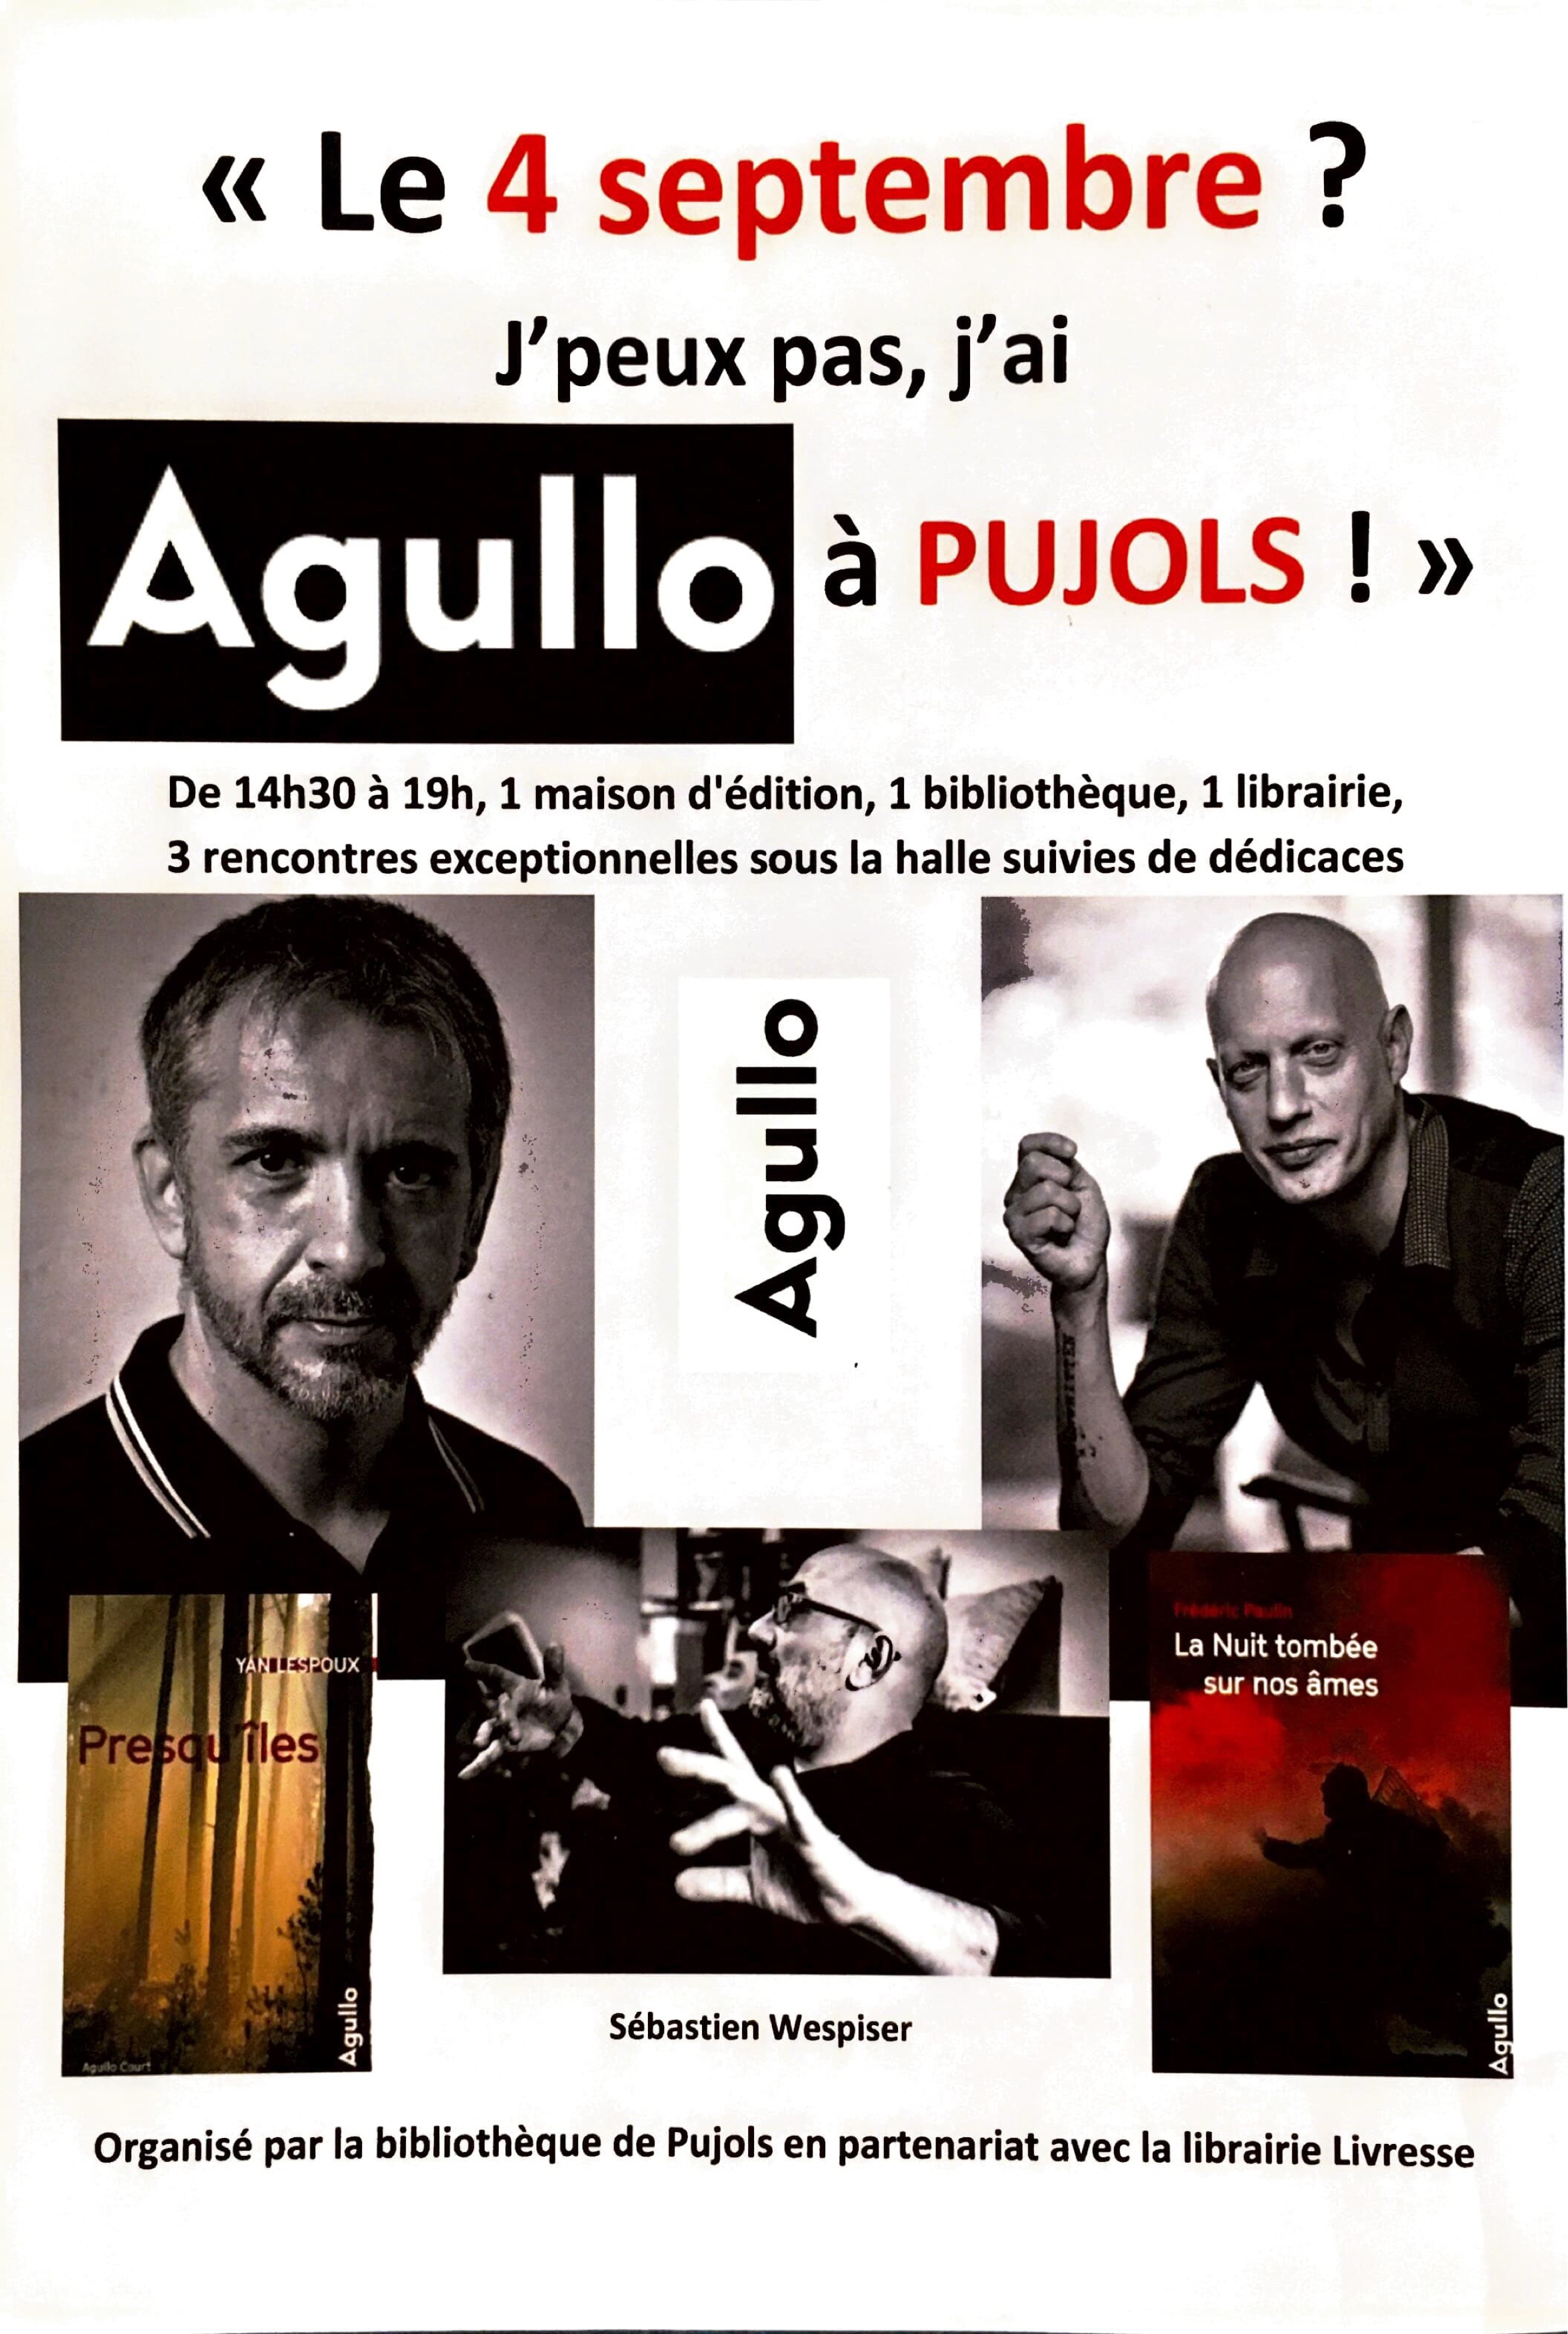 Rencontre avec les éditions Agullo et leurs auteurs à Pujols !